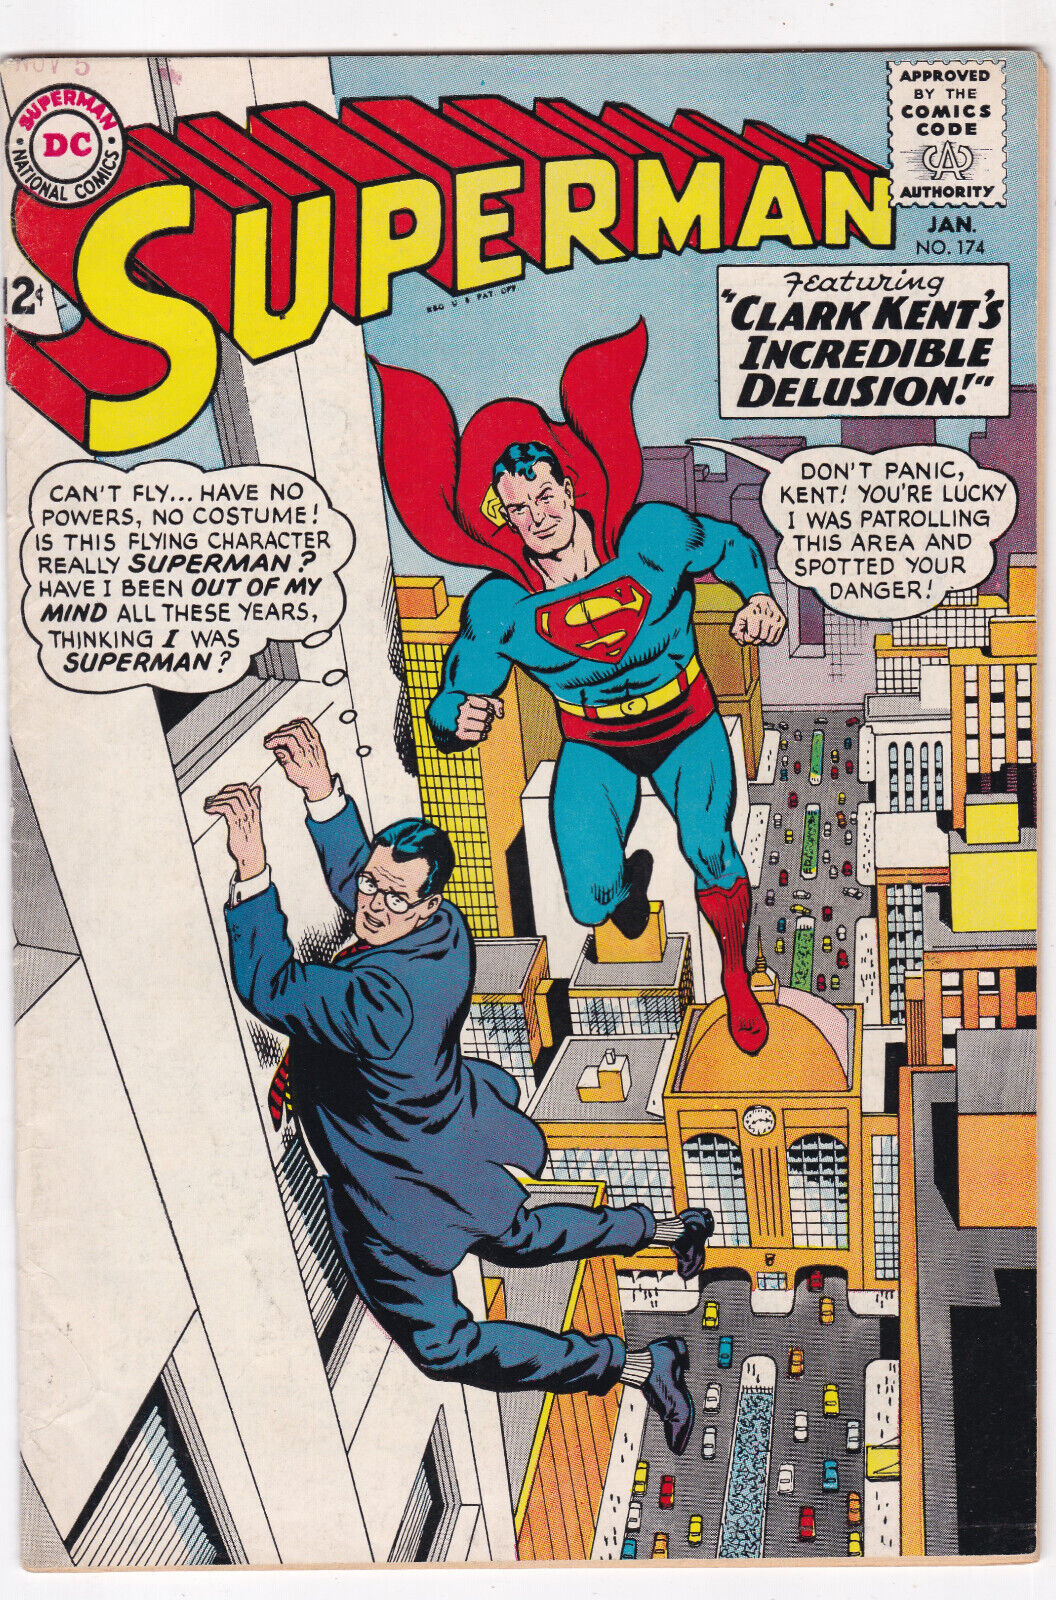 SUPERMAN #174 FINE/VFINE 7.0 INCREDIBLE DELUSION Curt Swan Art DC COMICS 1965